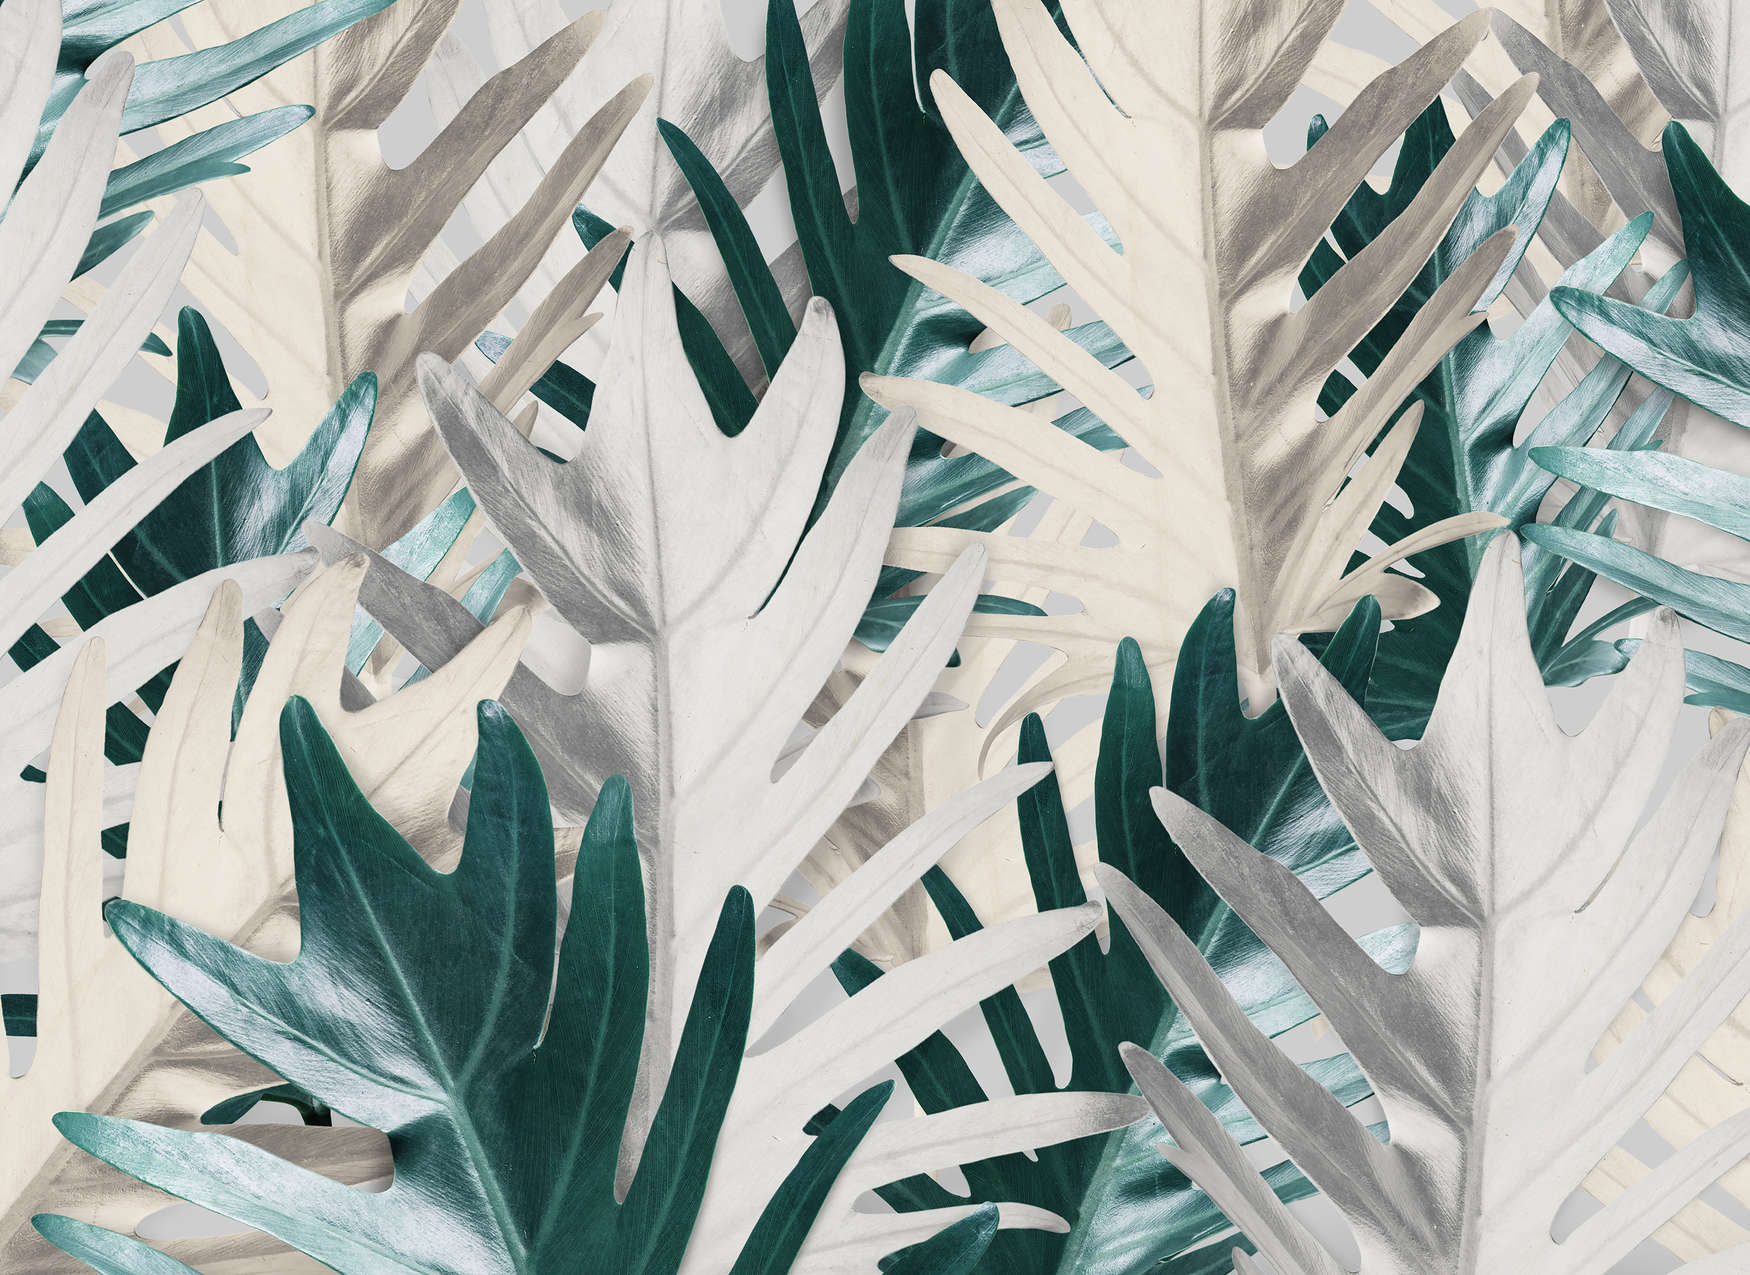             Fototapete mit tropischen Palmblättern – Grün, Weiß
        